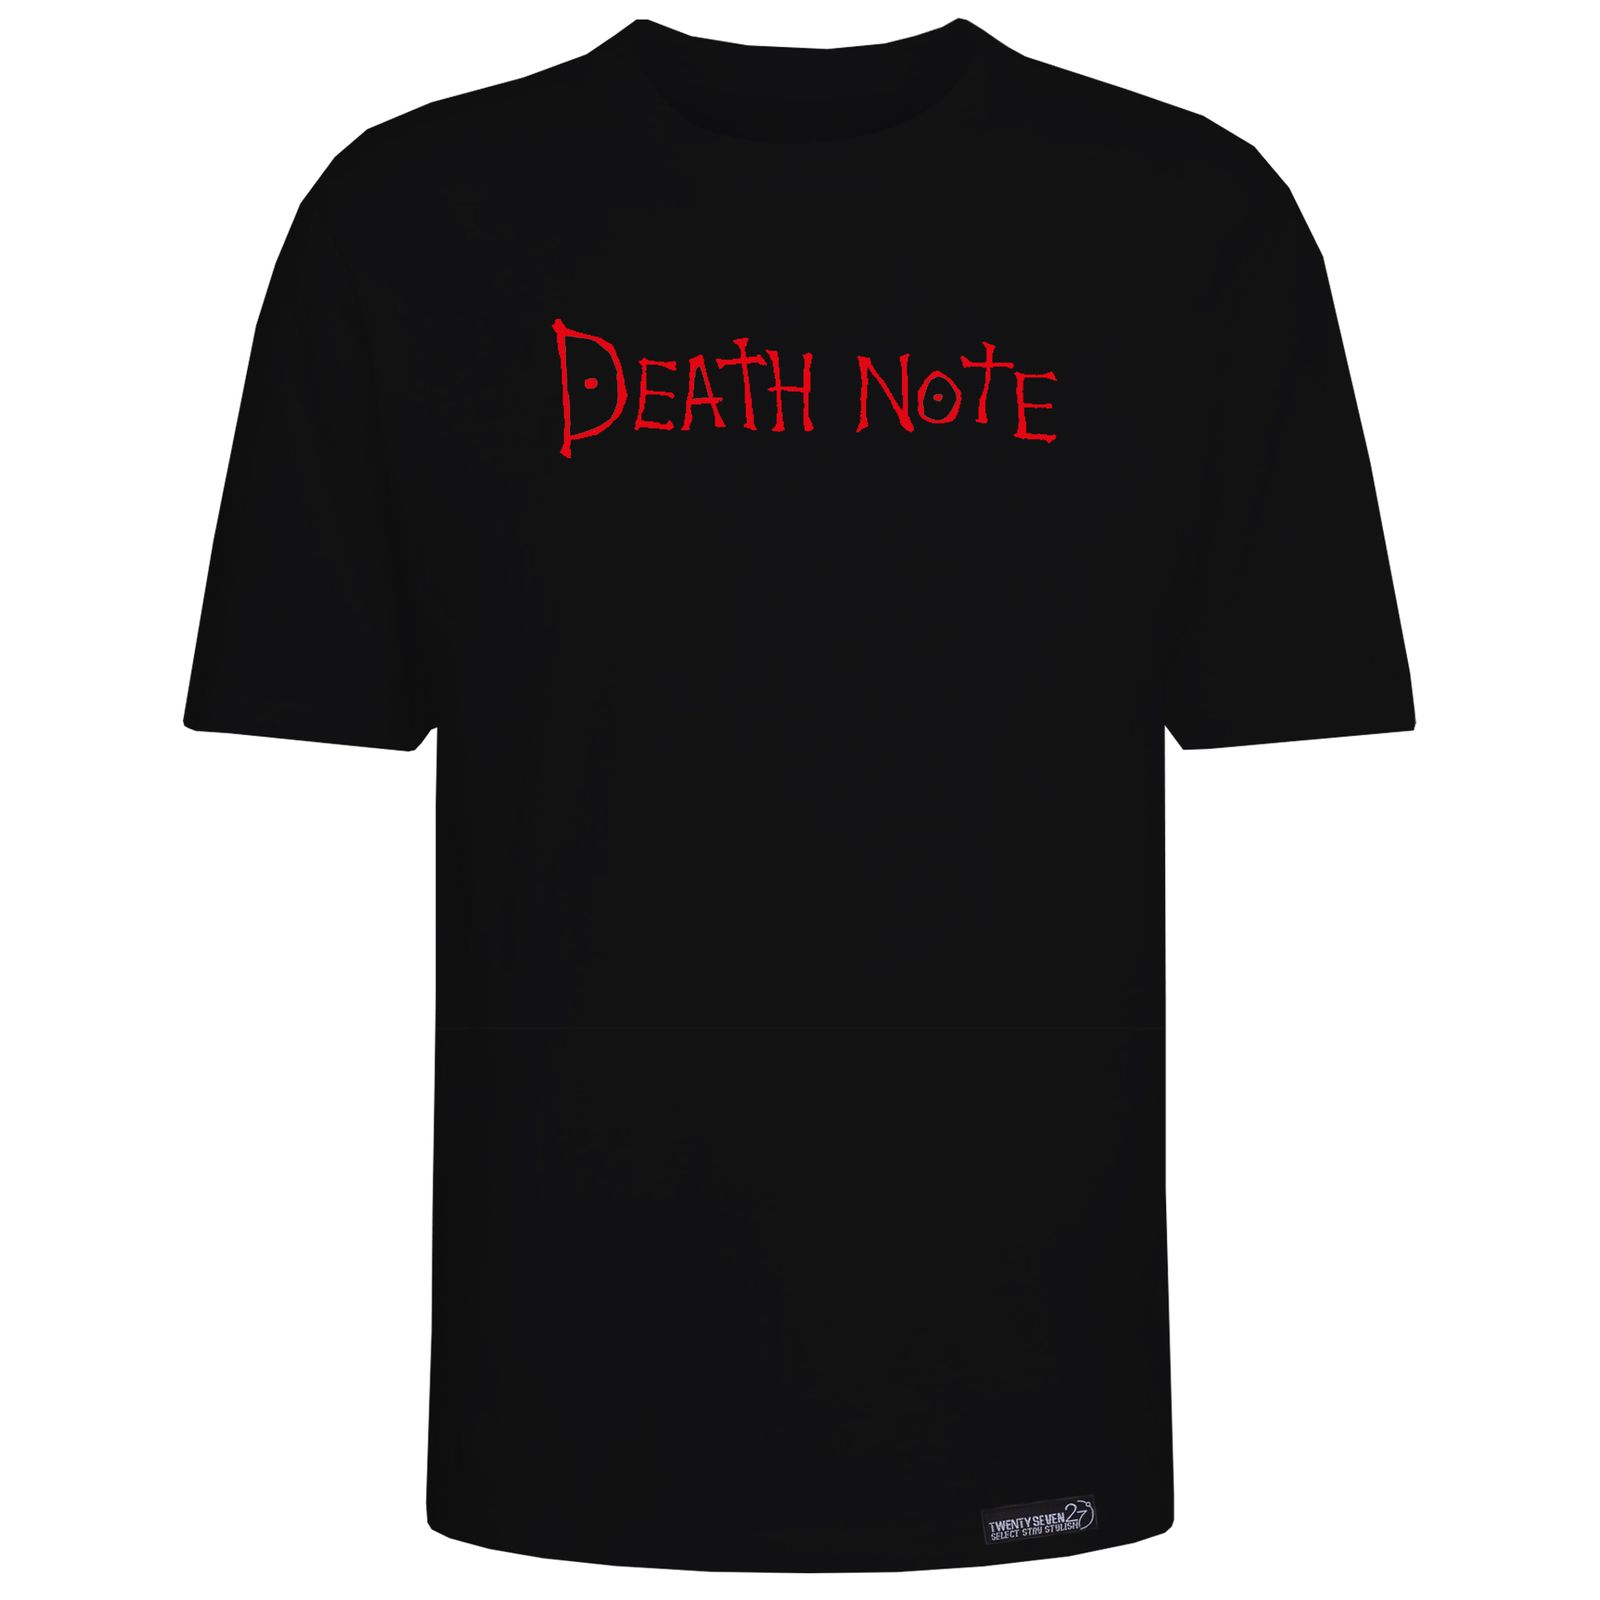 تی شرت آستین کوتاه مردانه 27 مدل Death note کد KV302 رنگ مشکی -  - 2